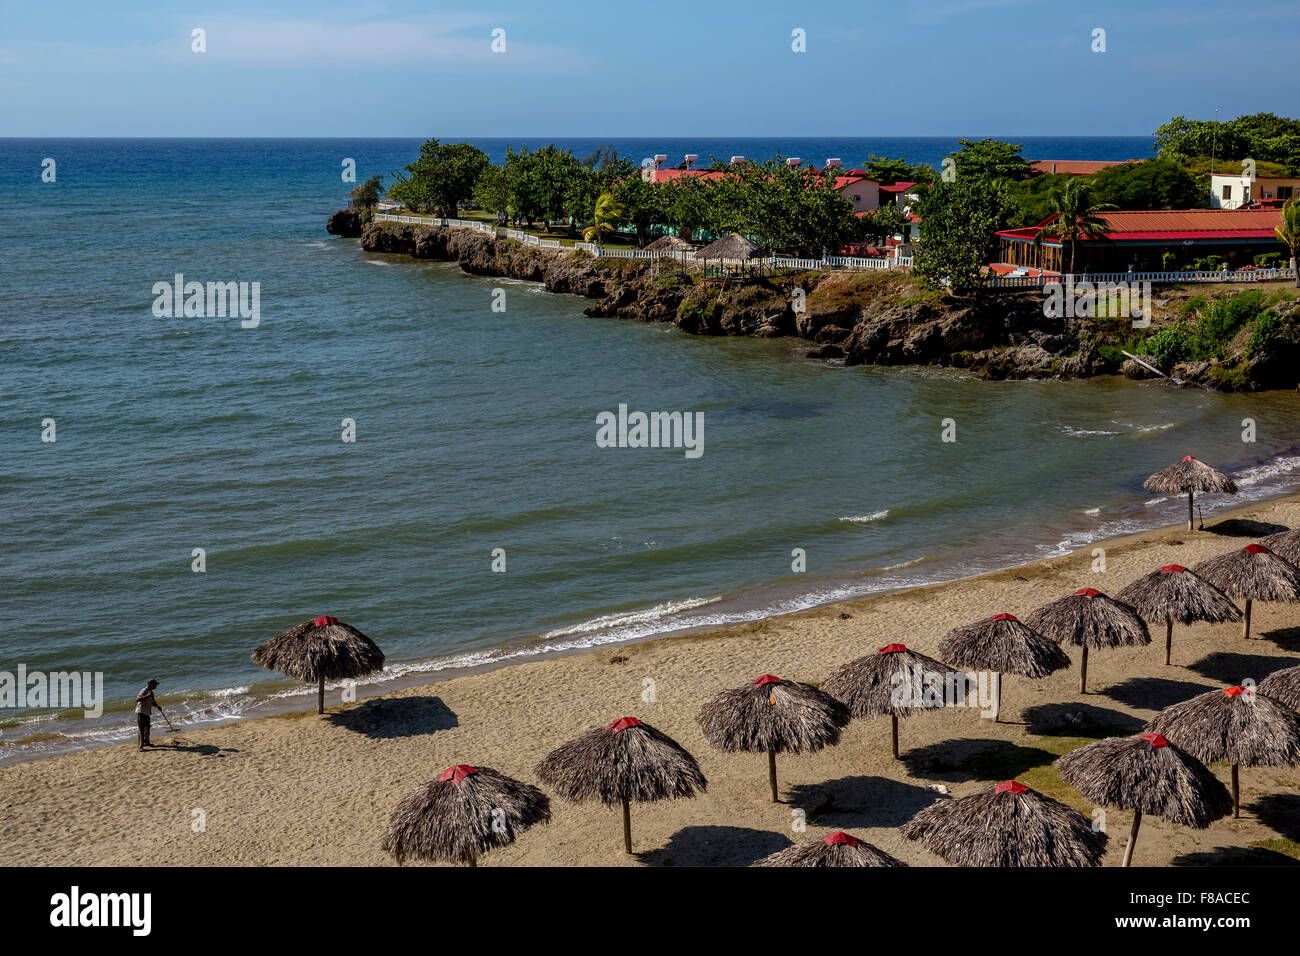 Ombrelloni fatte di foglie di palma, spiaggia sulla costa caraibica di Cuba, la spiaggia di Yaguanabo sul lato sud del Mar dei Caraibi Foto Stock